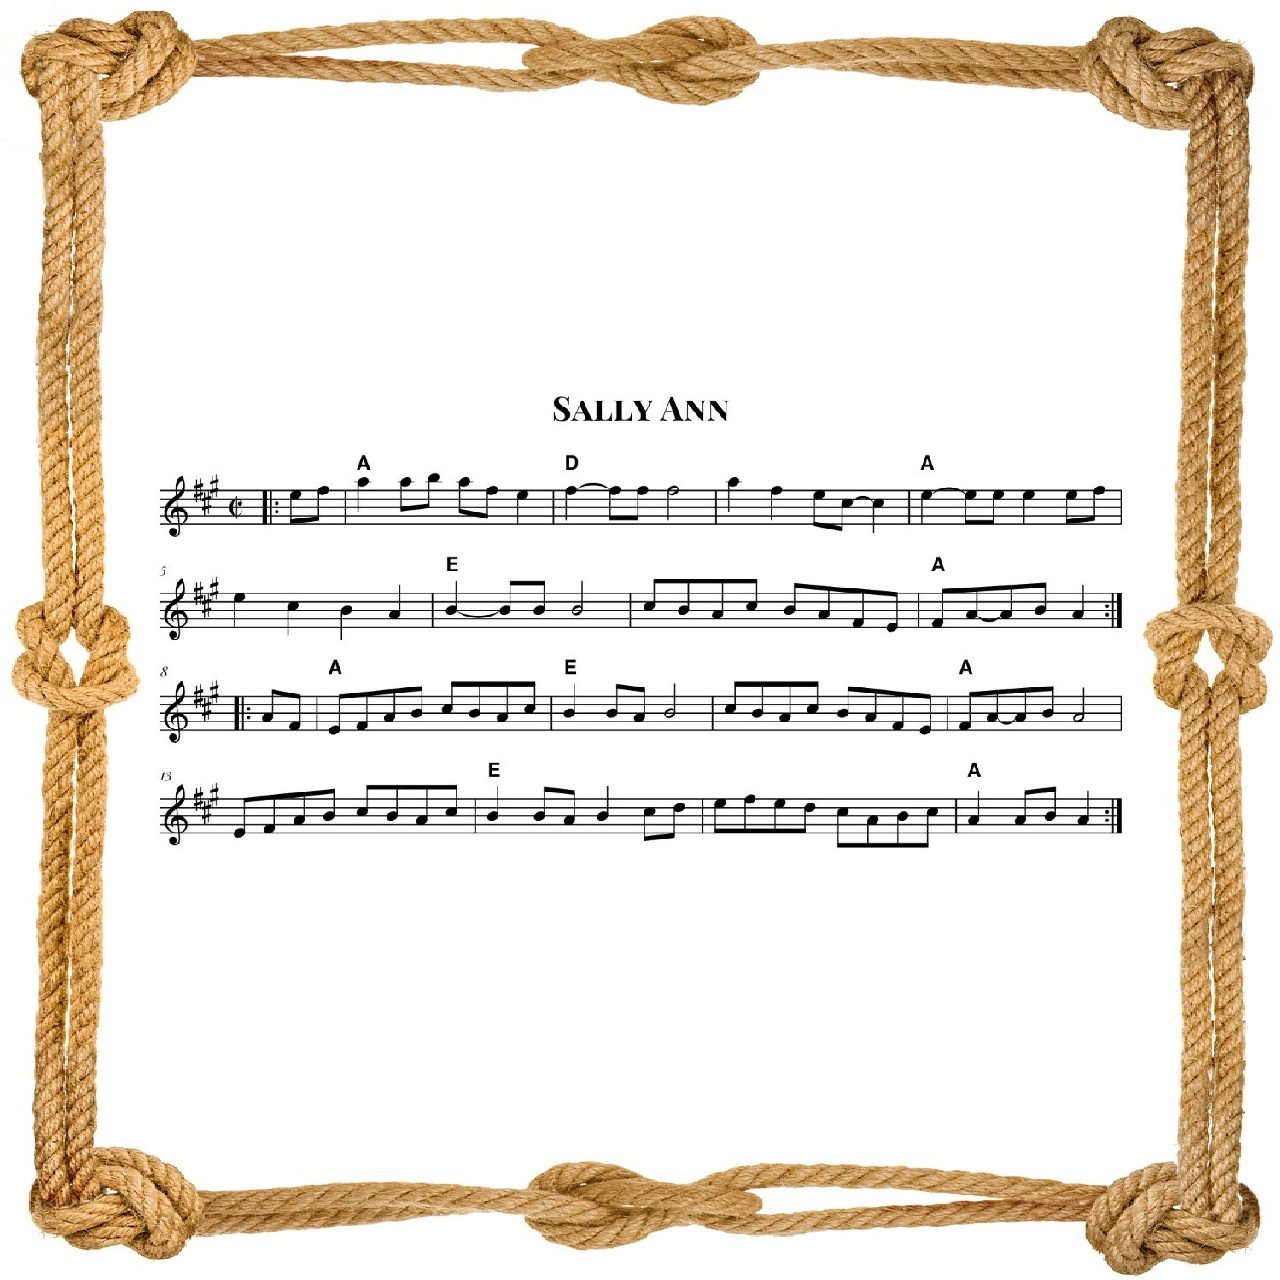 Sally Ann (Fiddle Tune)